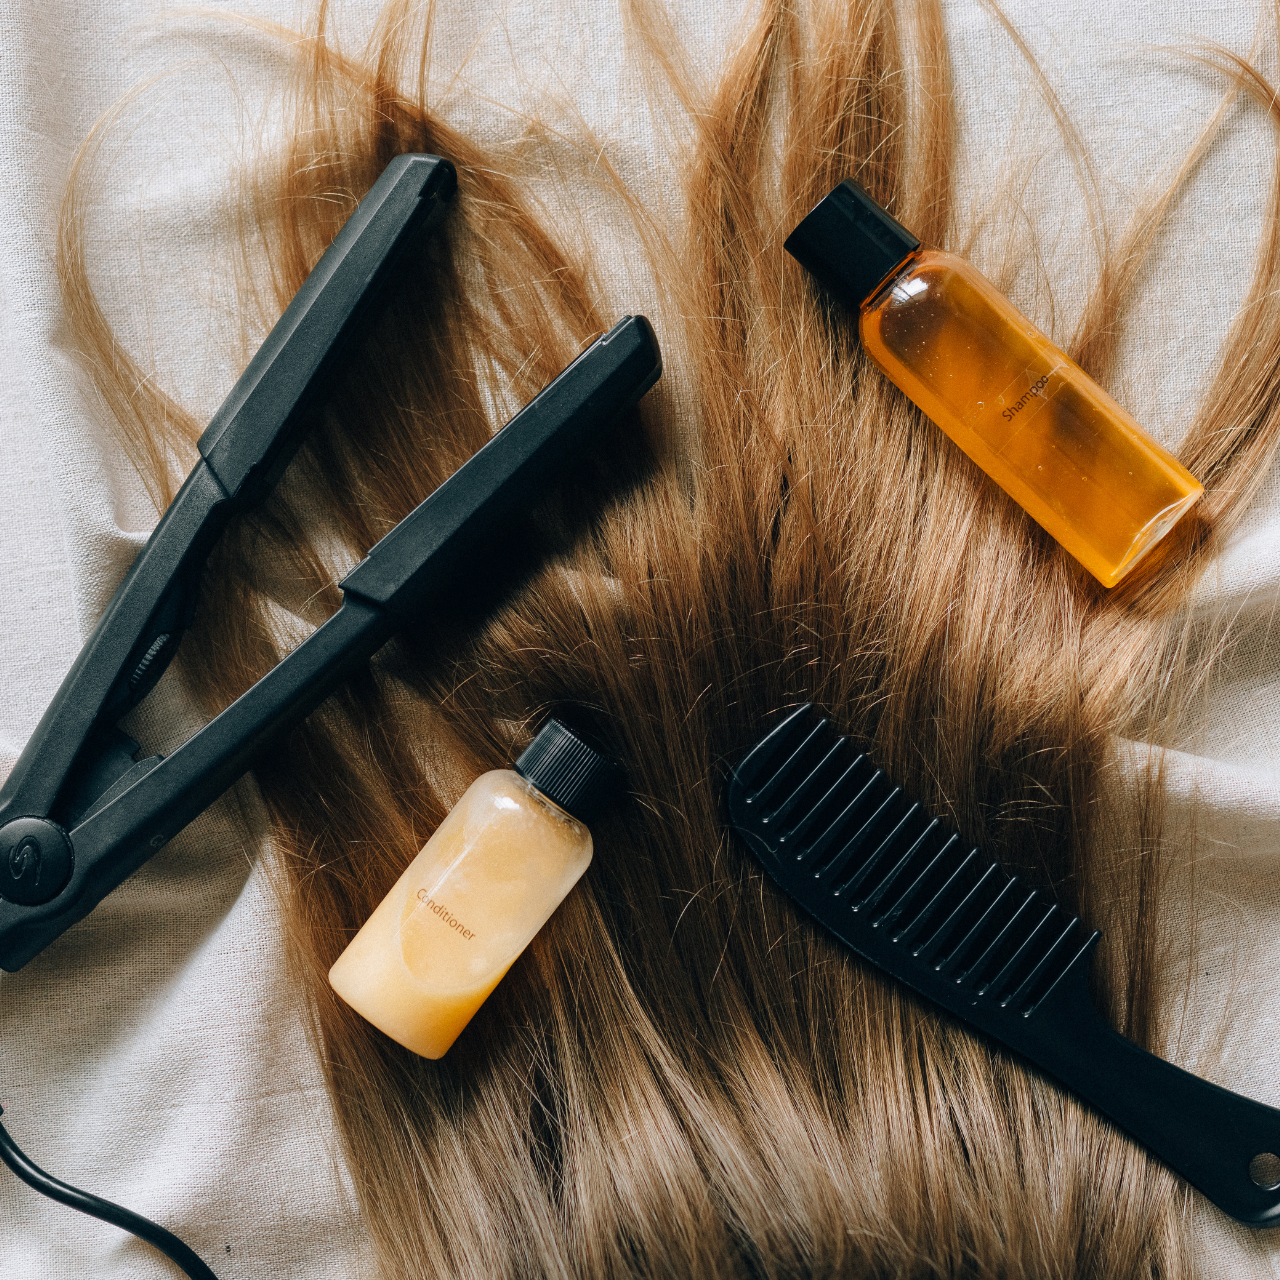 Dầu xả khô dành cho loại tóc nào?